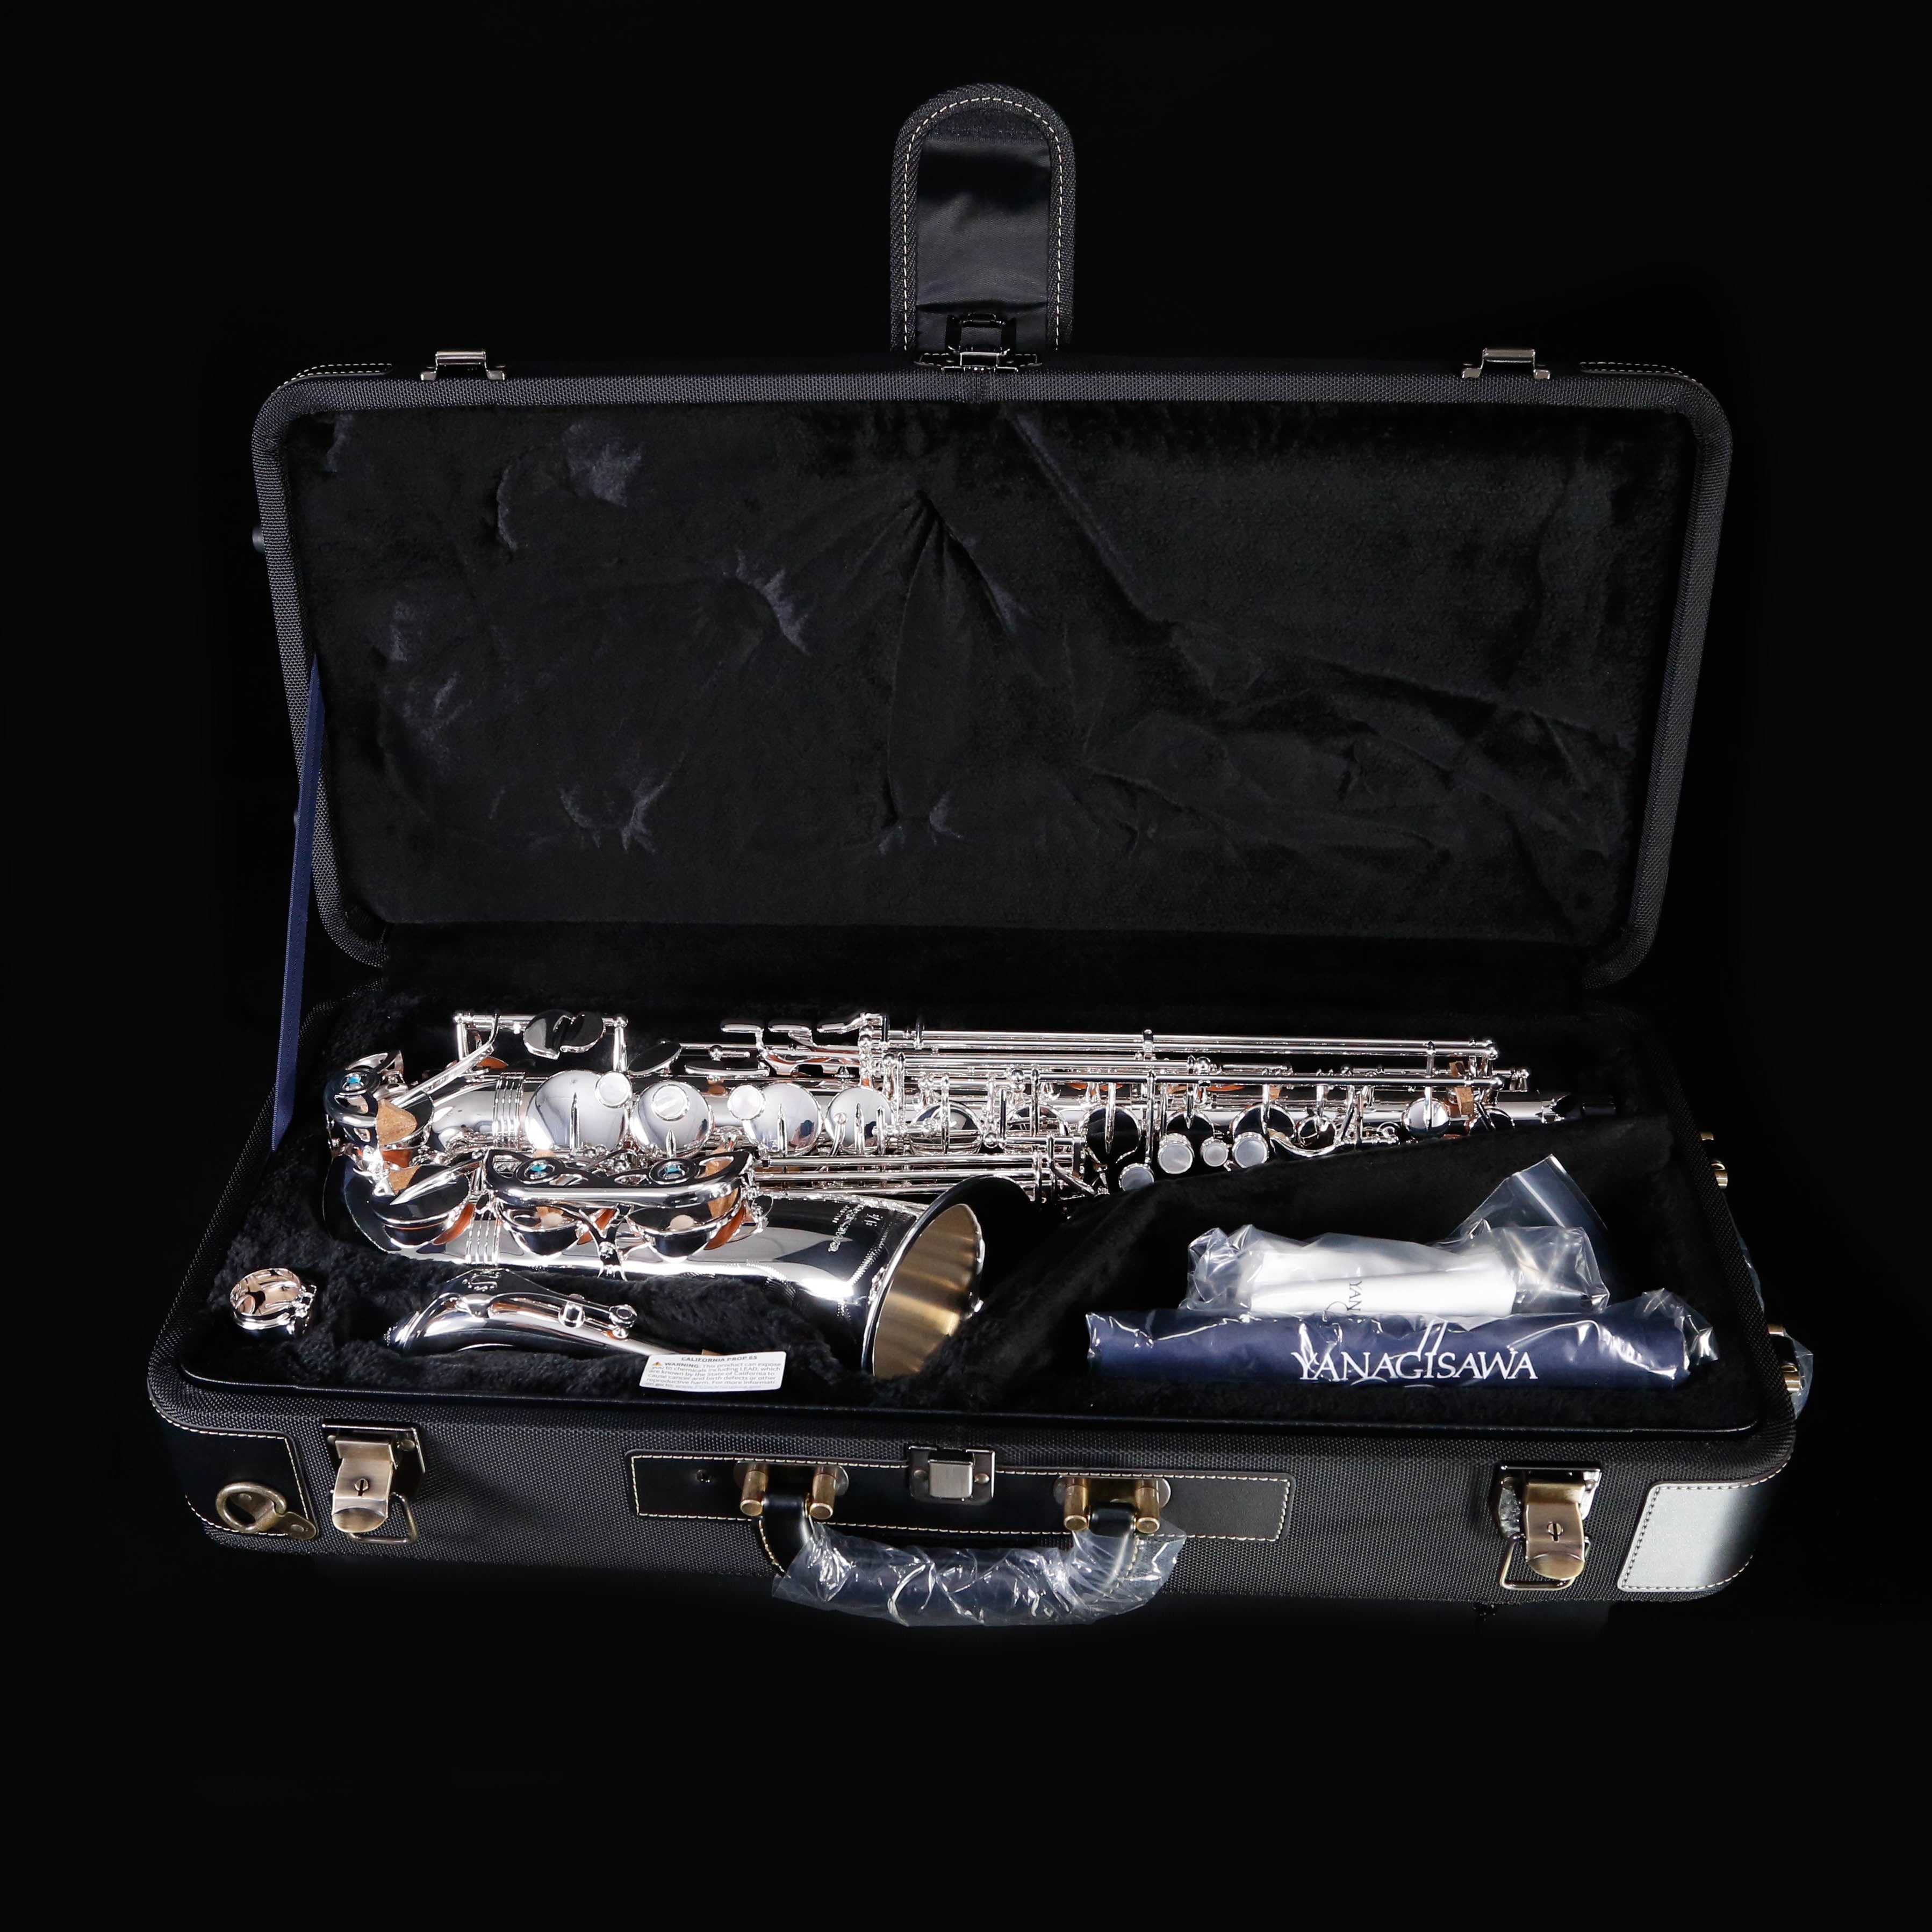 Yanagisawa AWO1S Eb Alto Saxophone - Professional Silver-Plate Finish